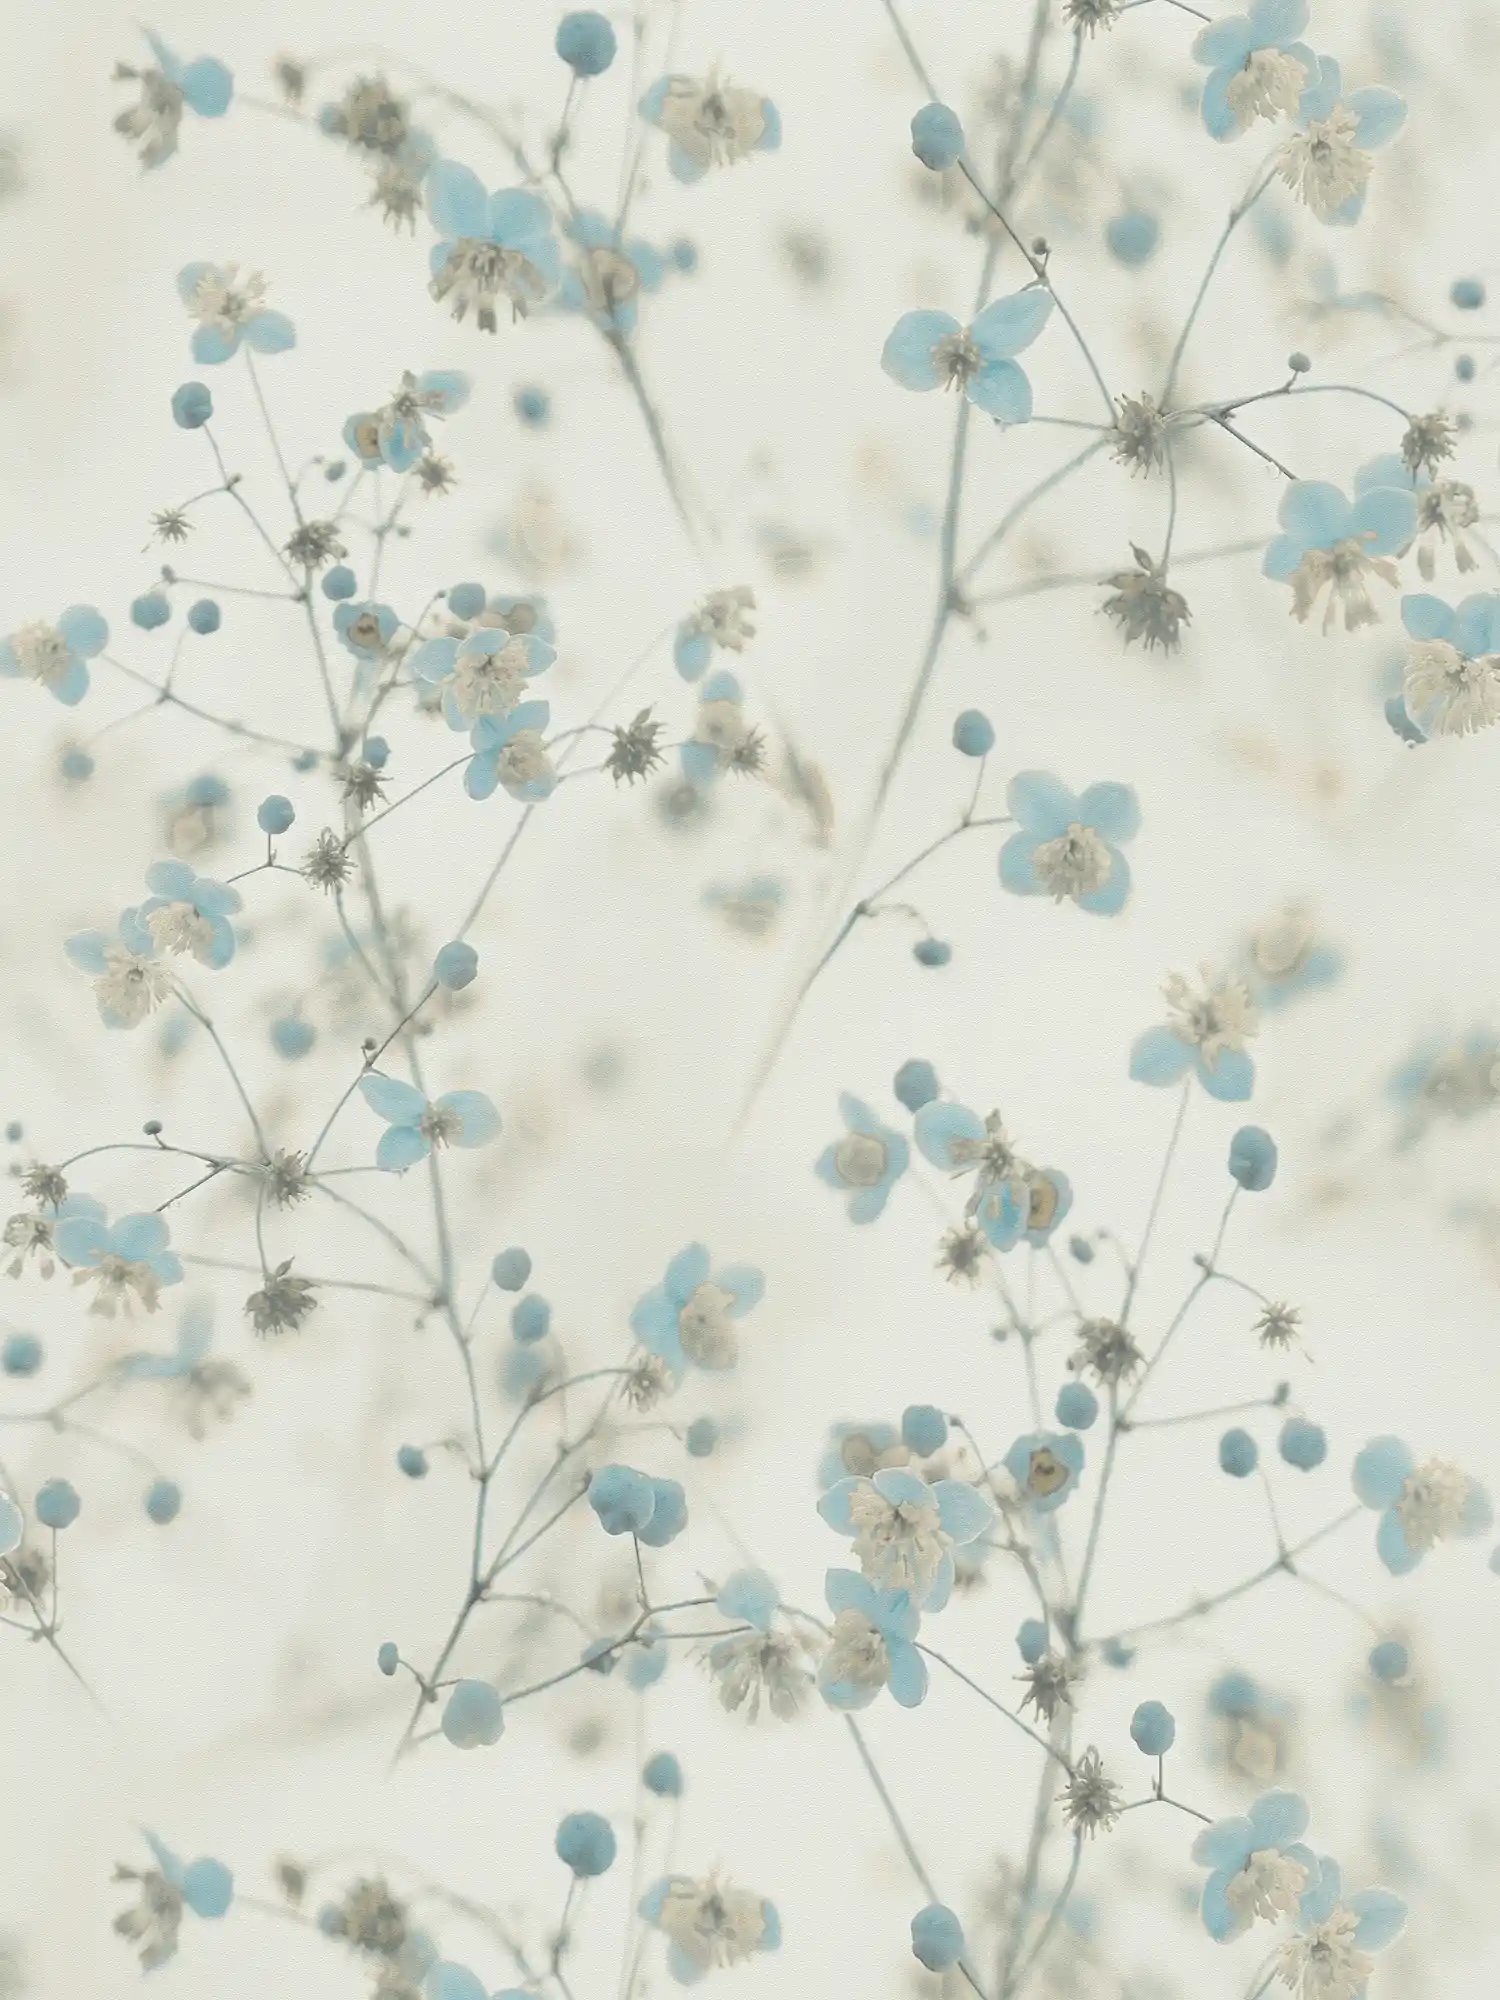 Romantische Blumentapete Fotocollage Stil – Grau, Blau
